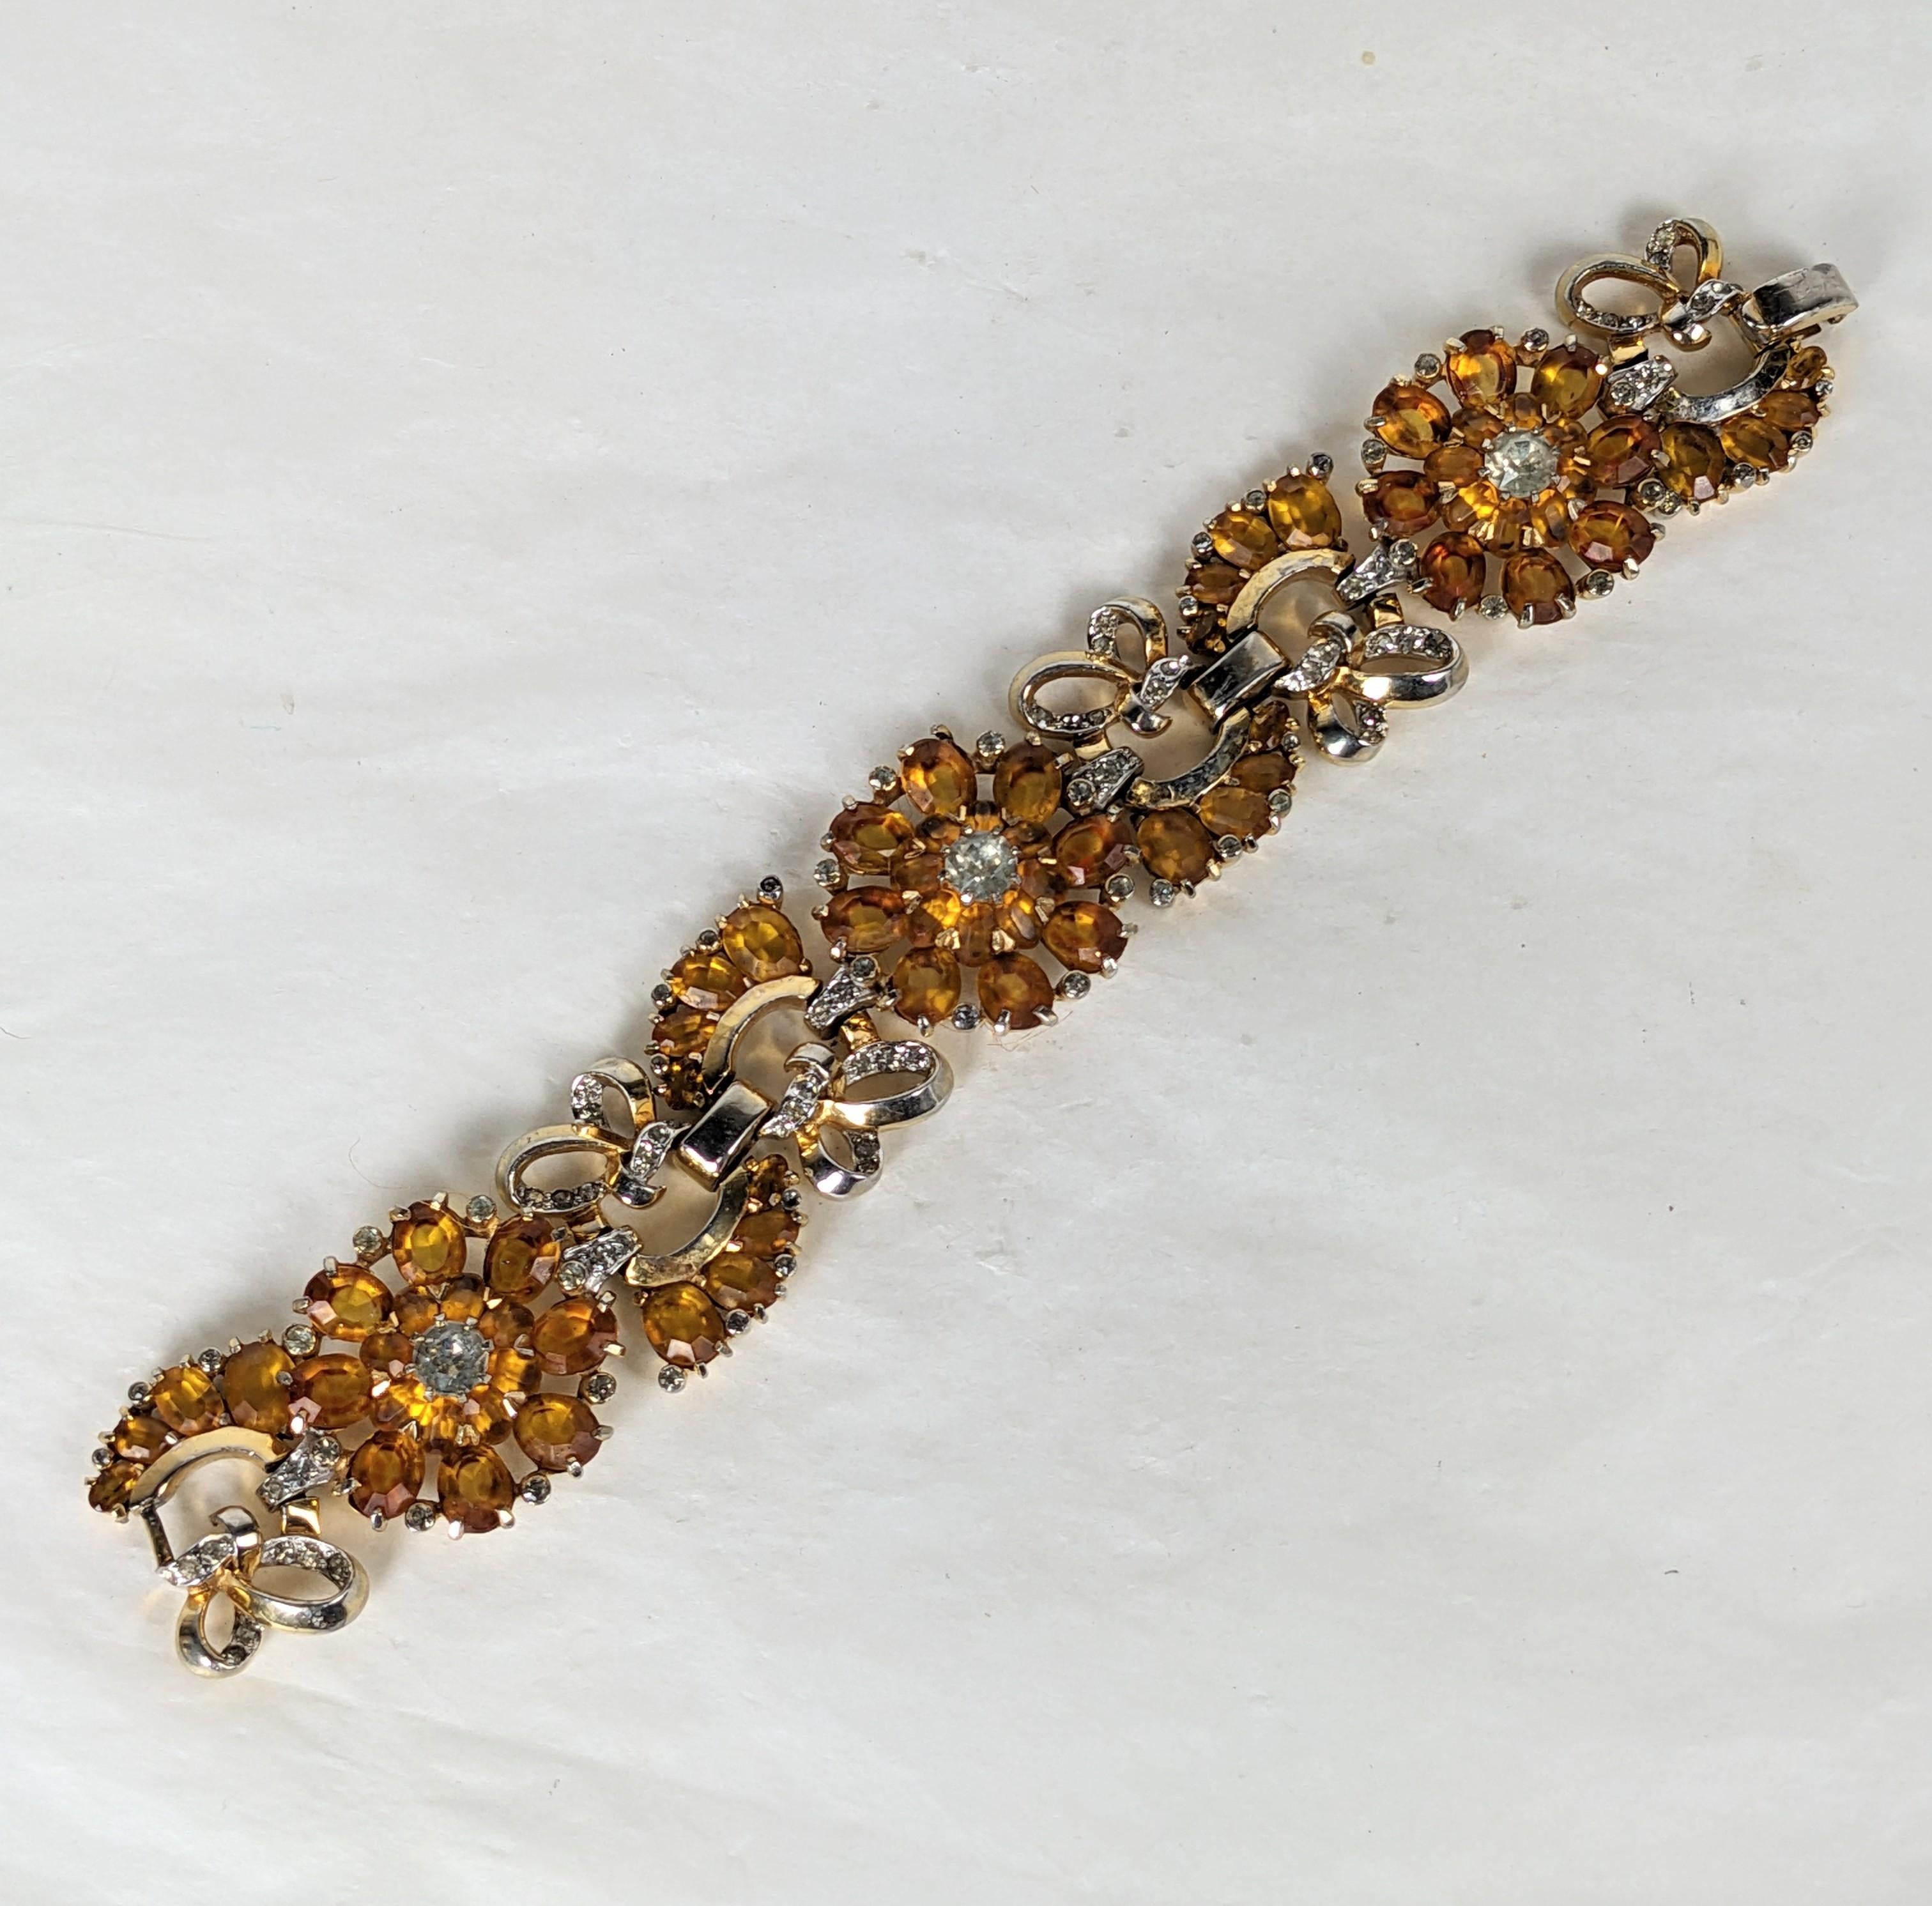 Bracelet à maillons Fleur et feuille de Mazer Topaze et Citrine. En métal de base rhodié et doré, avec des pavés de strass en cristal et des pierres ovales à facettes de taille variable en topaze et citrine. États-Unis d'Amérique, années 1940.
Pour